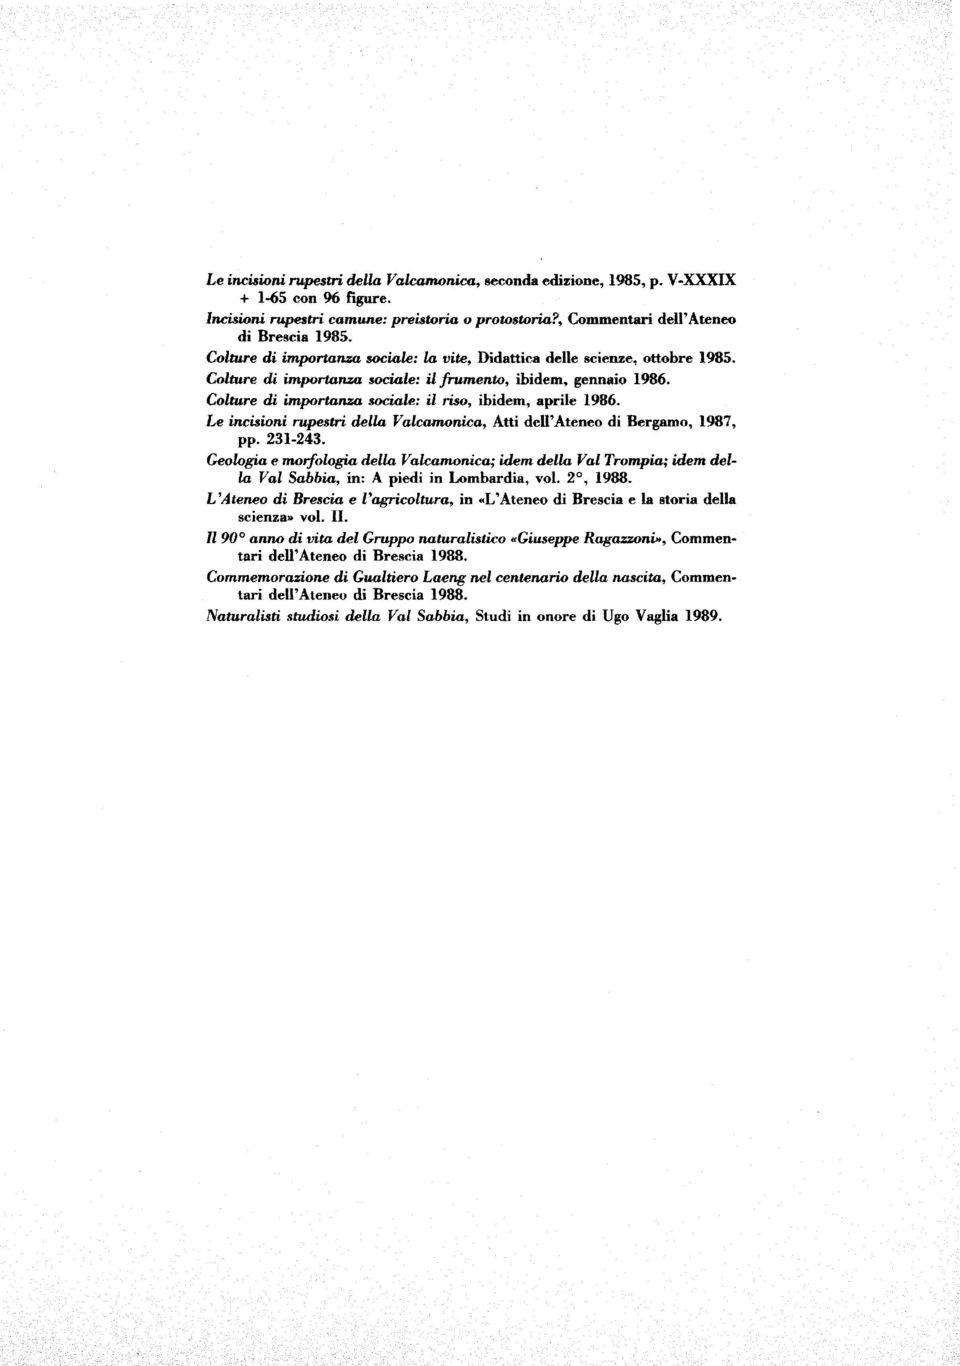 Colture di importanza sociole: il Mo, ibidem, aprile 1986. Le incisioni rupesfb della Valcamonica, Atti dell'ateneo di Bergarno, 1987, pp. 231-243.